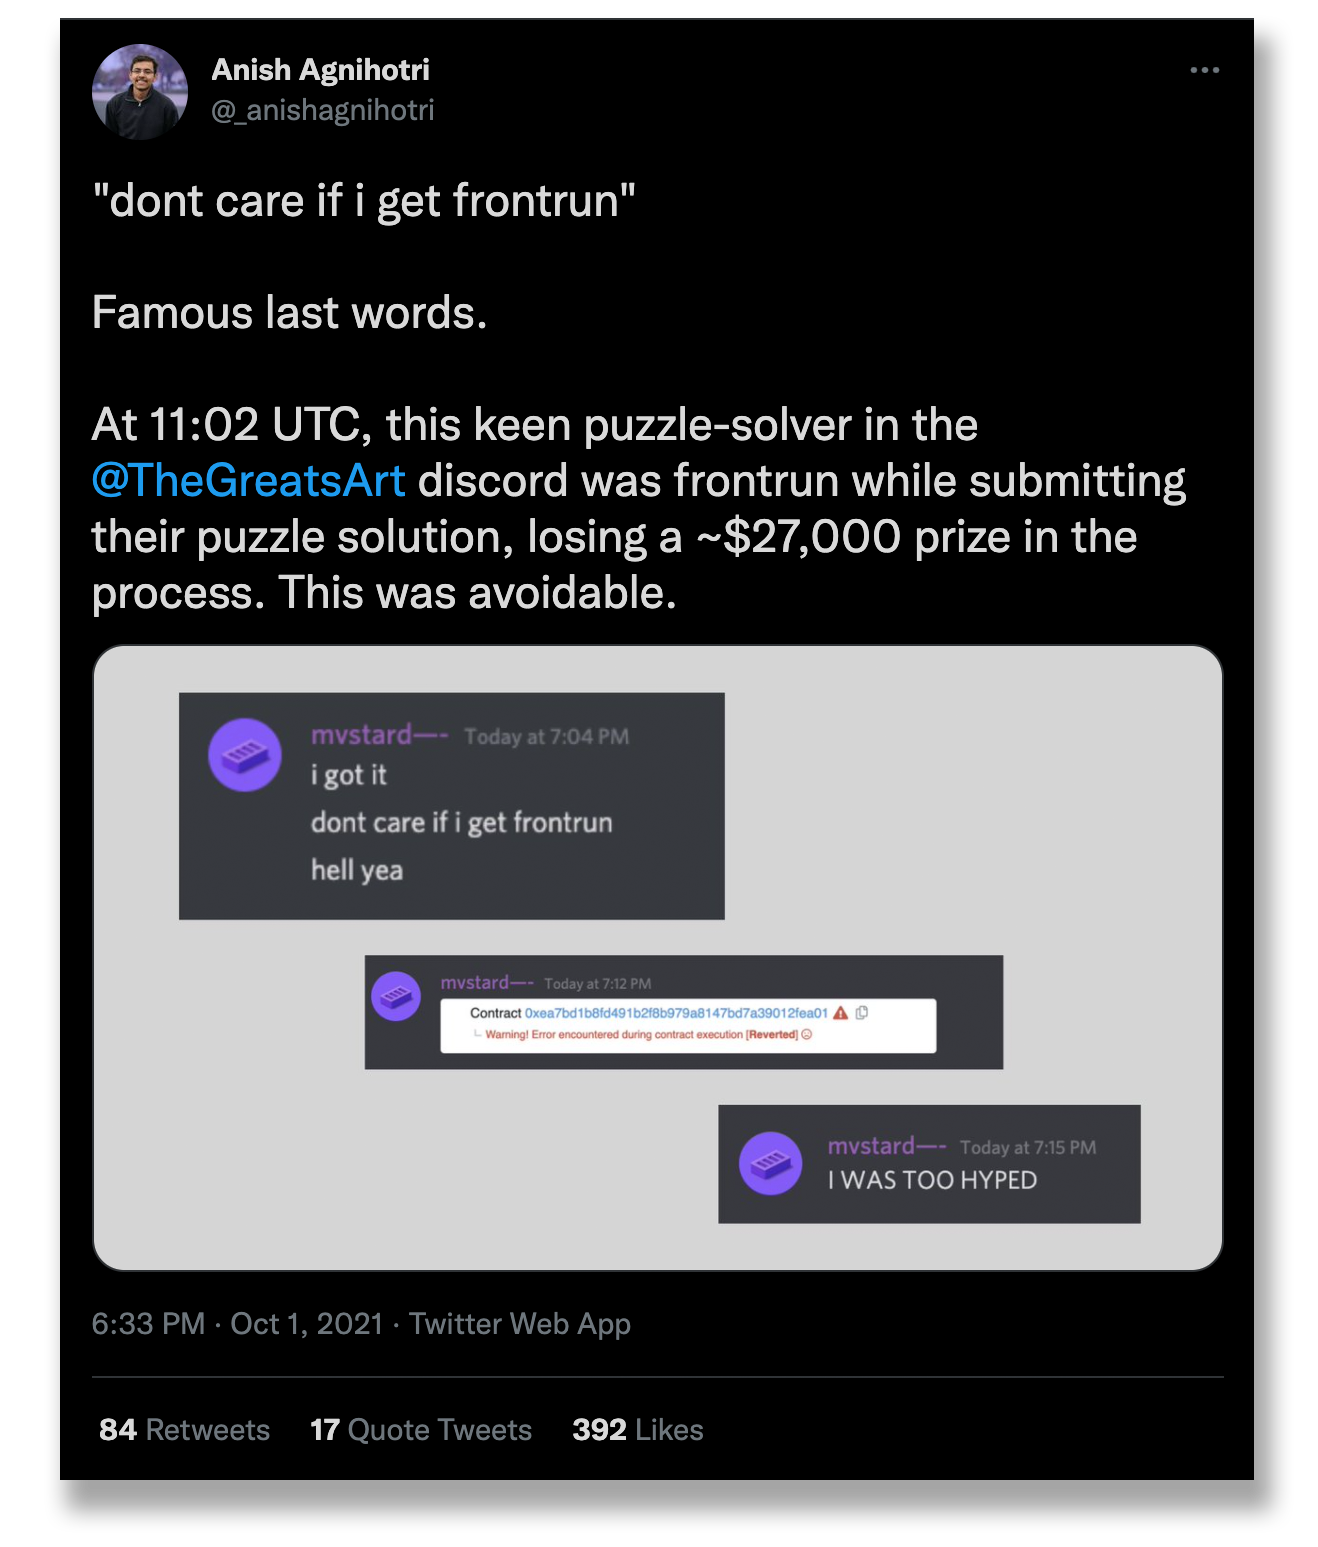 프론트러닝 공격으로 수만 달러를 빼앗긴 퍼즐에 대해 이야기하는 트윗